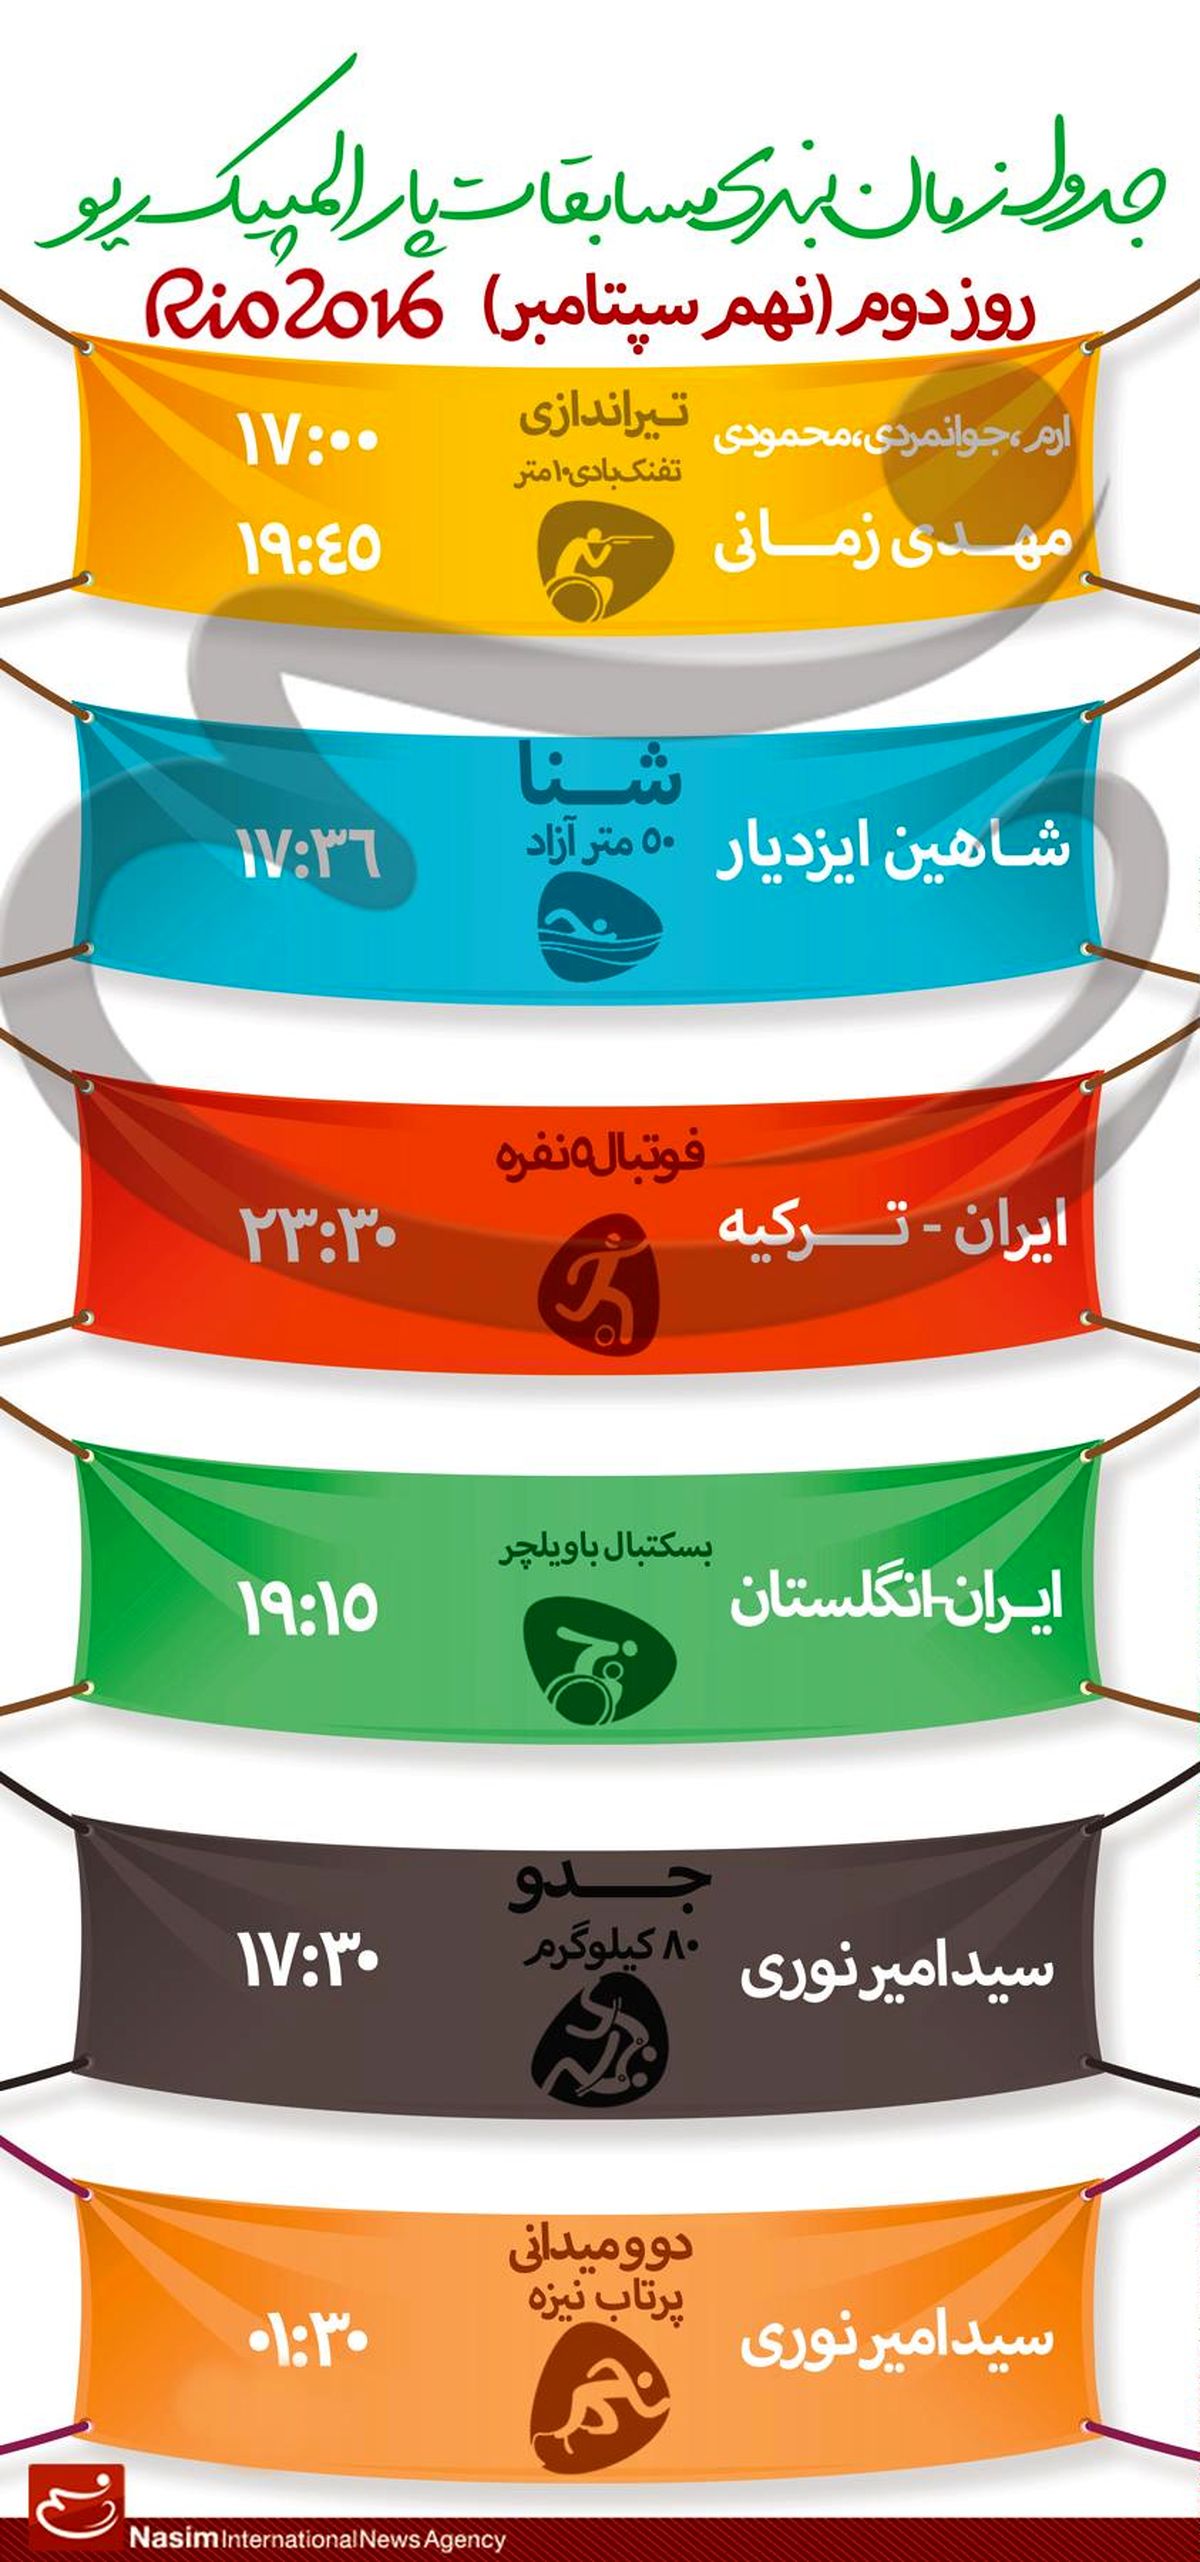 جدول زمانبندی مسابقات نمایندگان ایران در "روز دوم" پارالمپیک ریو